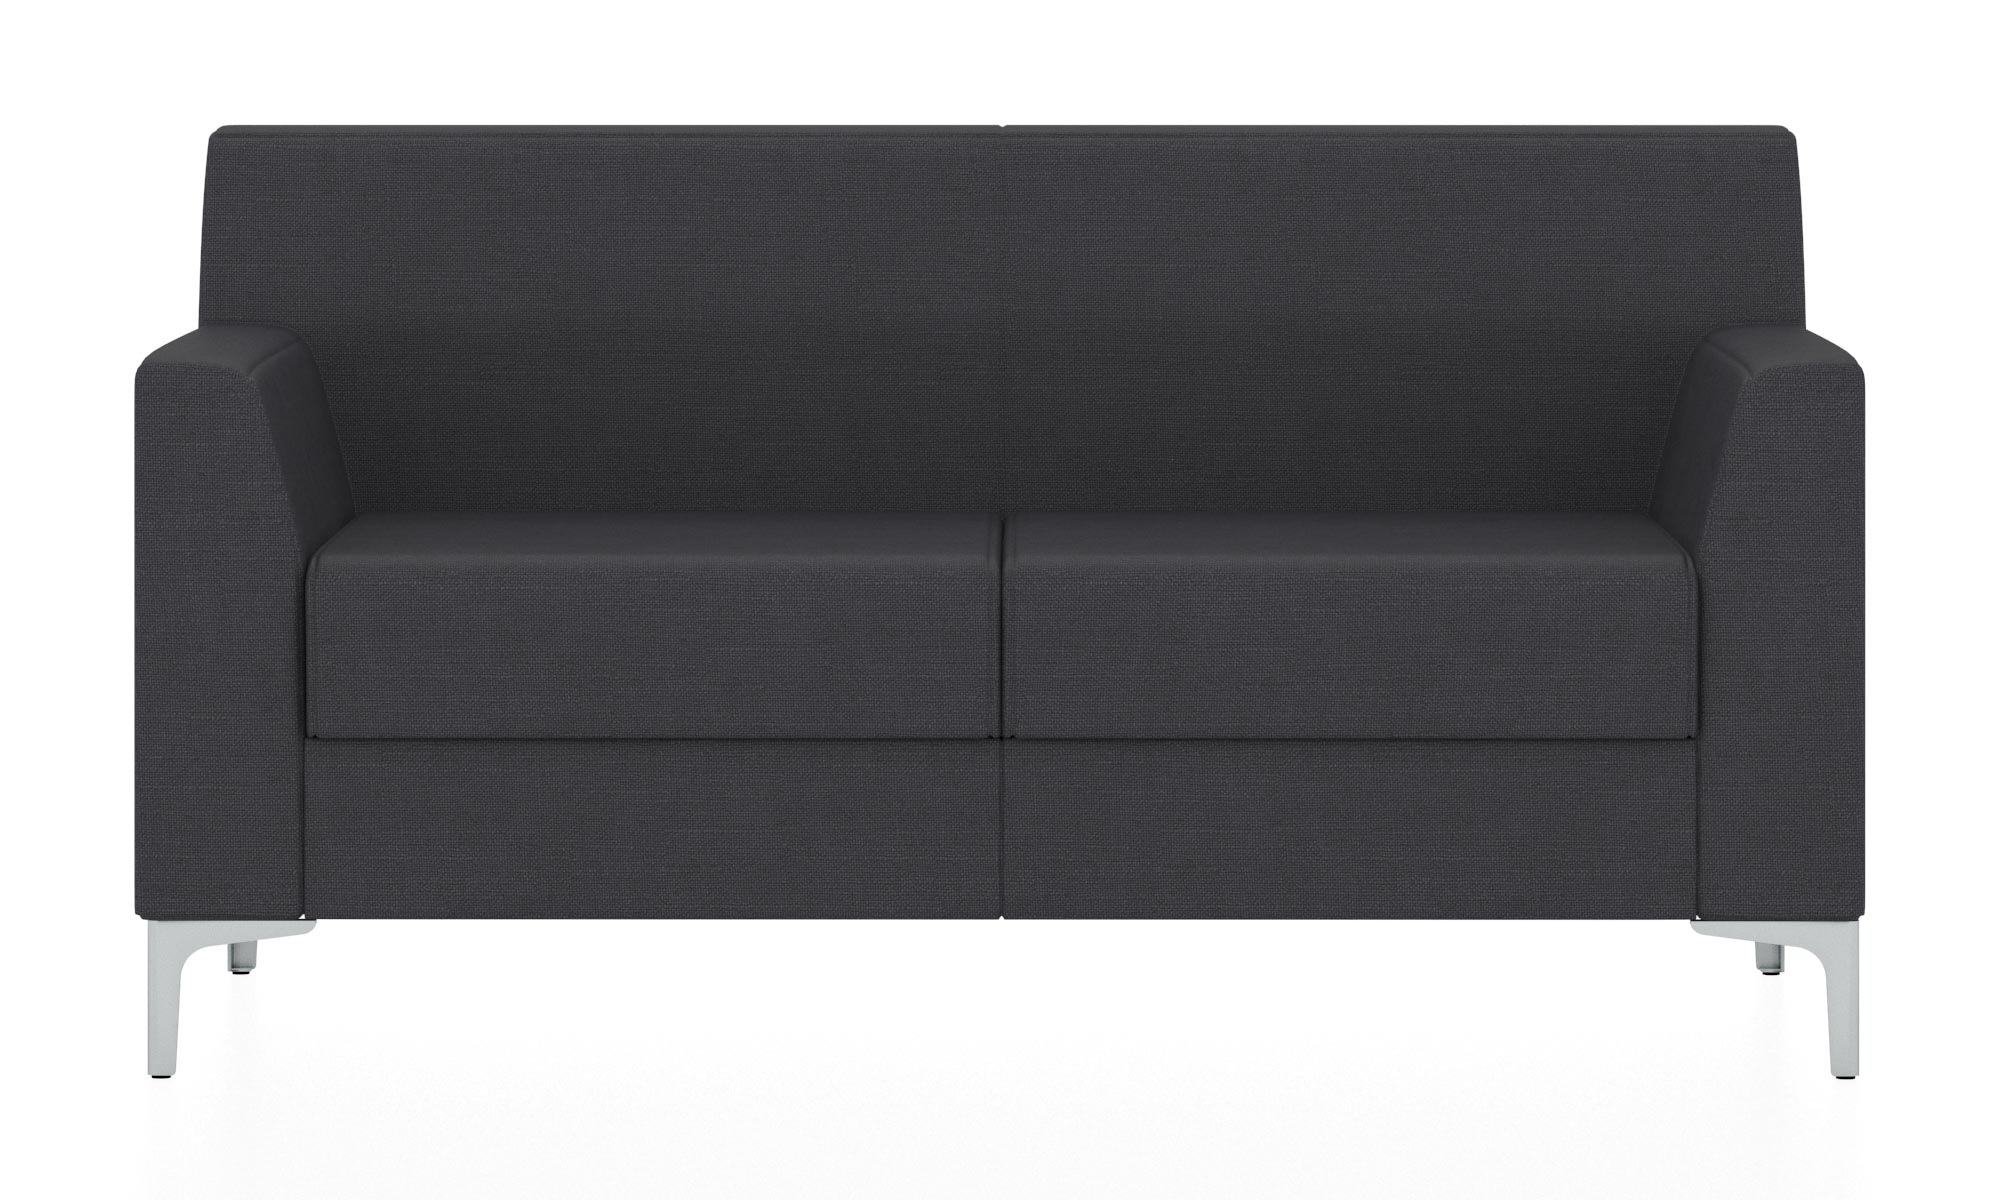 Классический двухместный диван. Обивка из ткани черного цвета (Twist 23)